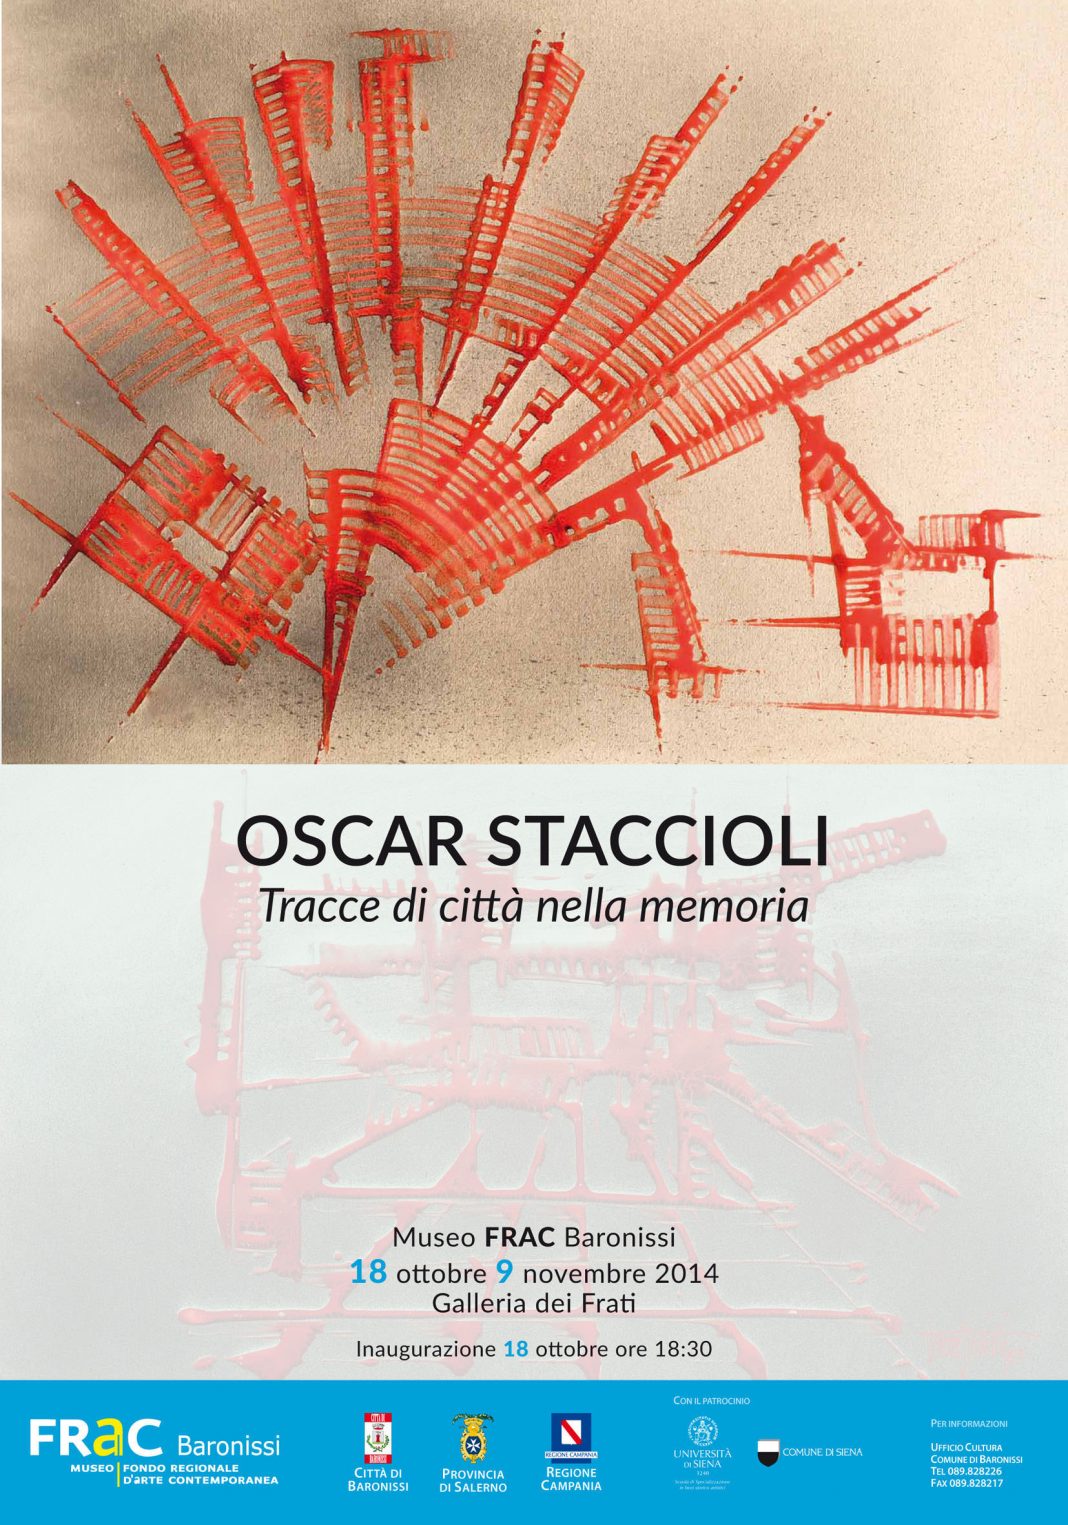 Oscar Staccioli – Tracce di città nella memoriahttps://www.exibart.com/repository/media/eventi/2014/10/oscar-staccioli-8211-tracce-di-città-nella-memoria-1068x1525.jpg